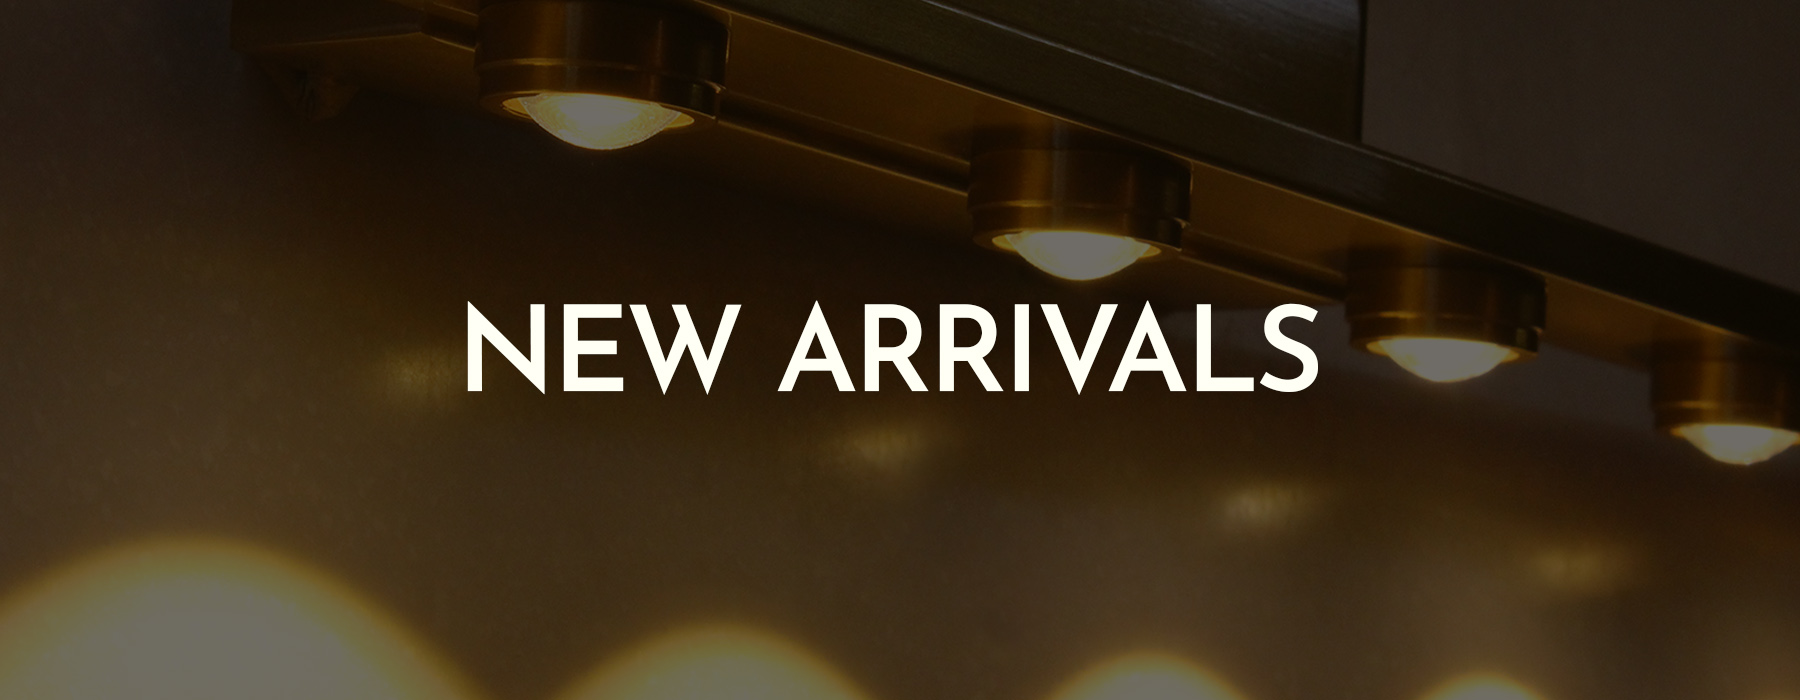 New Arrivals - Ankur Lighting